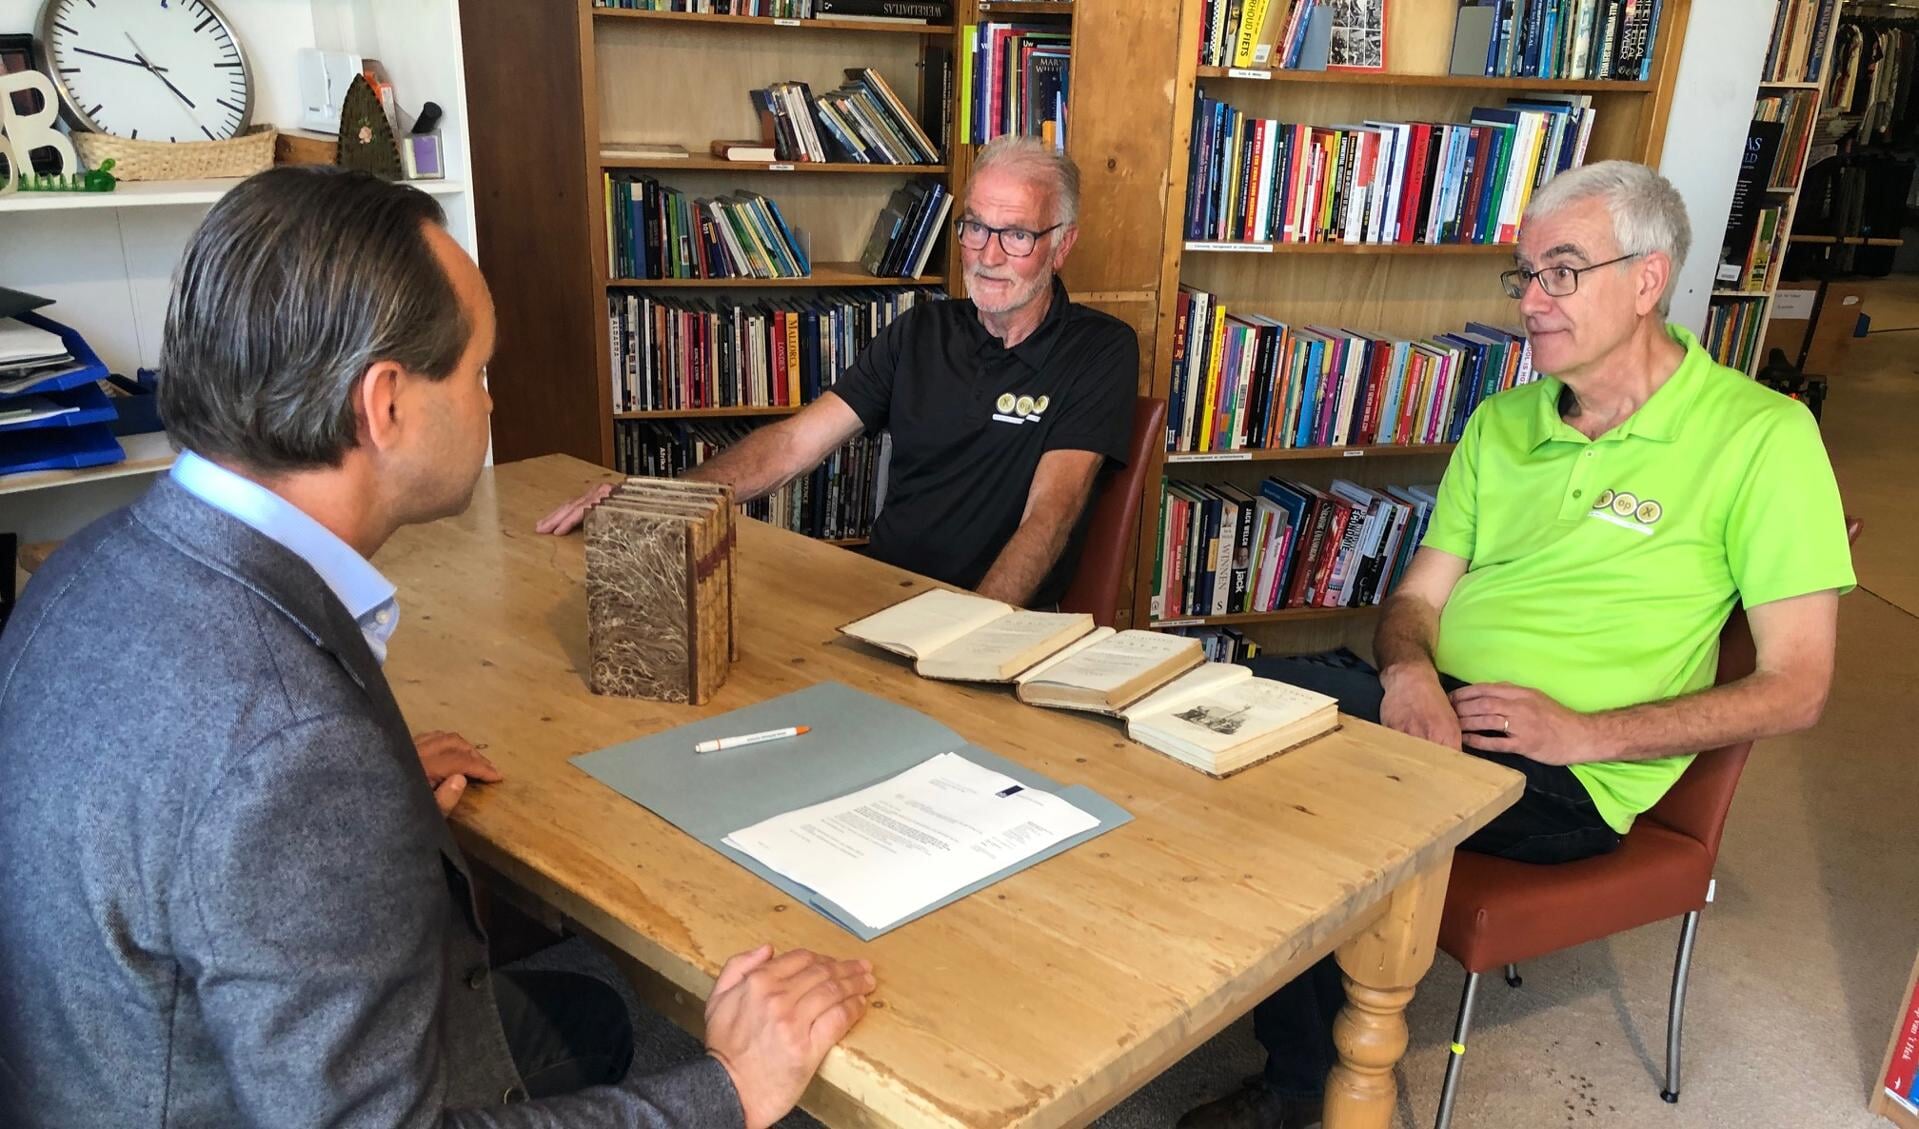 Penningmeester George Tervoort (l) en Wim Maan (r) , vrijwilliger op de boekenafdeling van XopX tekenen de akte van schenking.